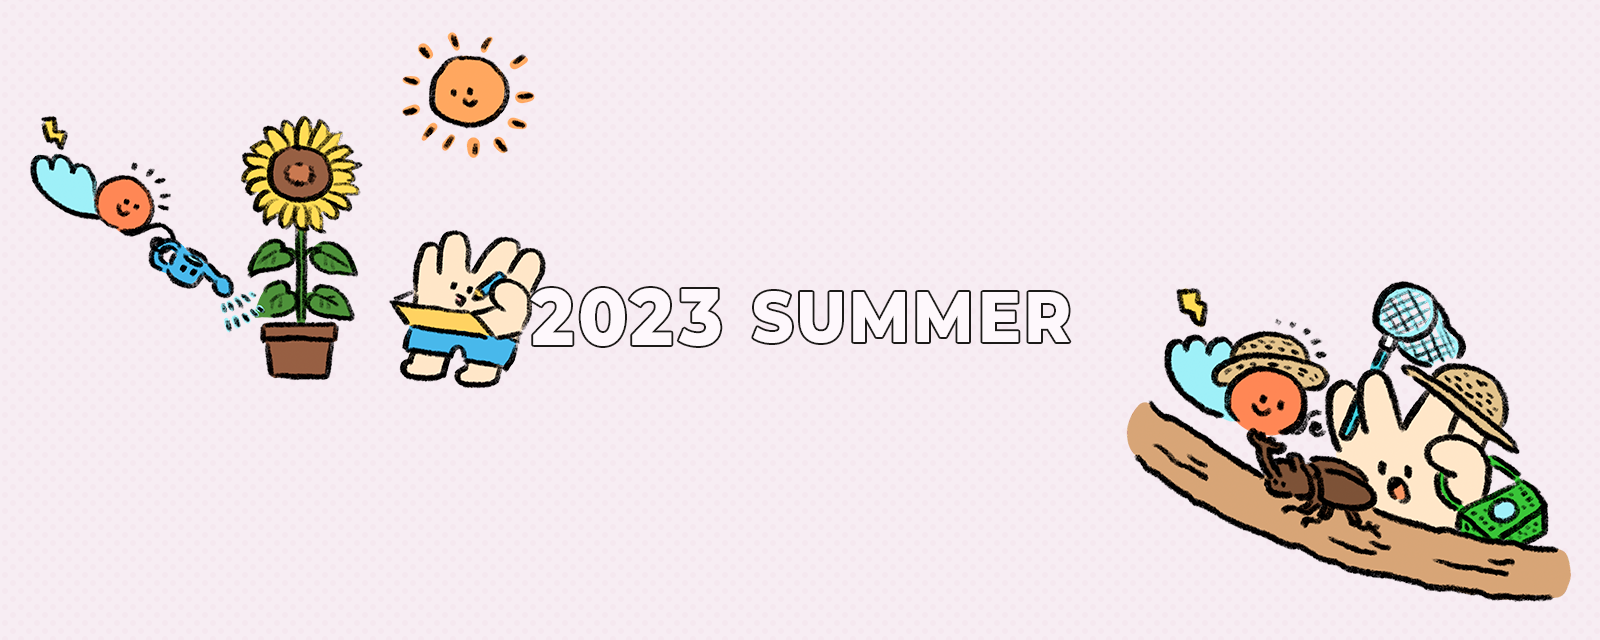 2023 SUMMER